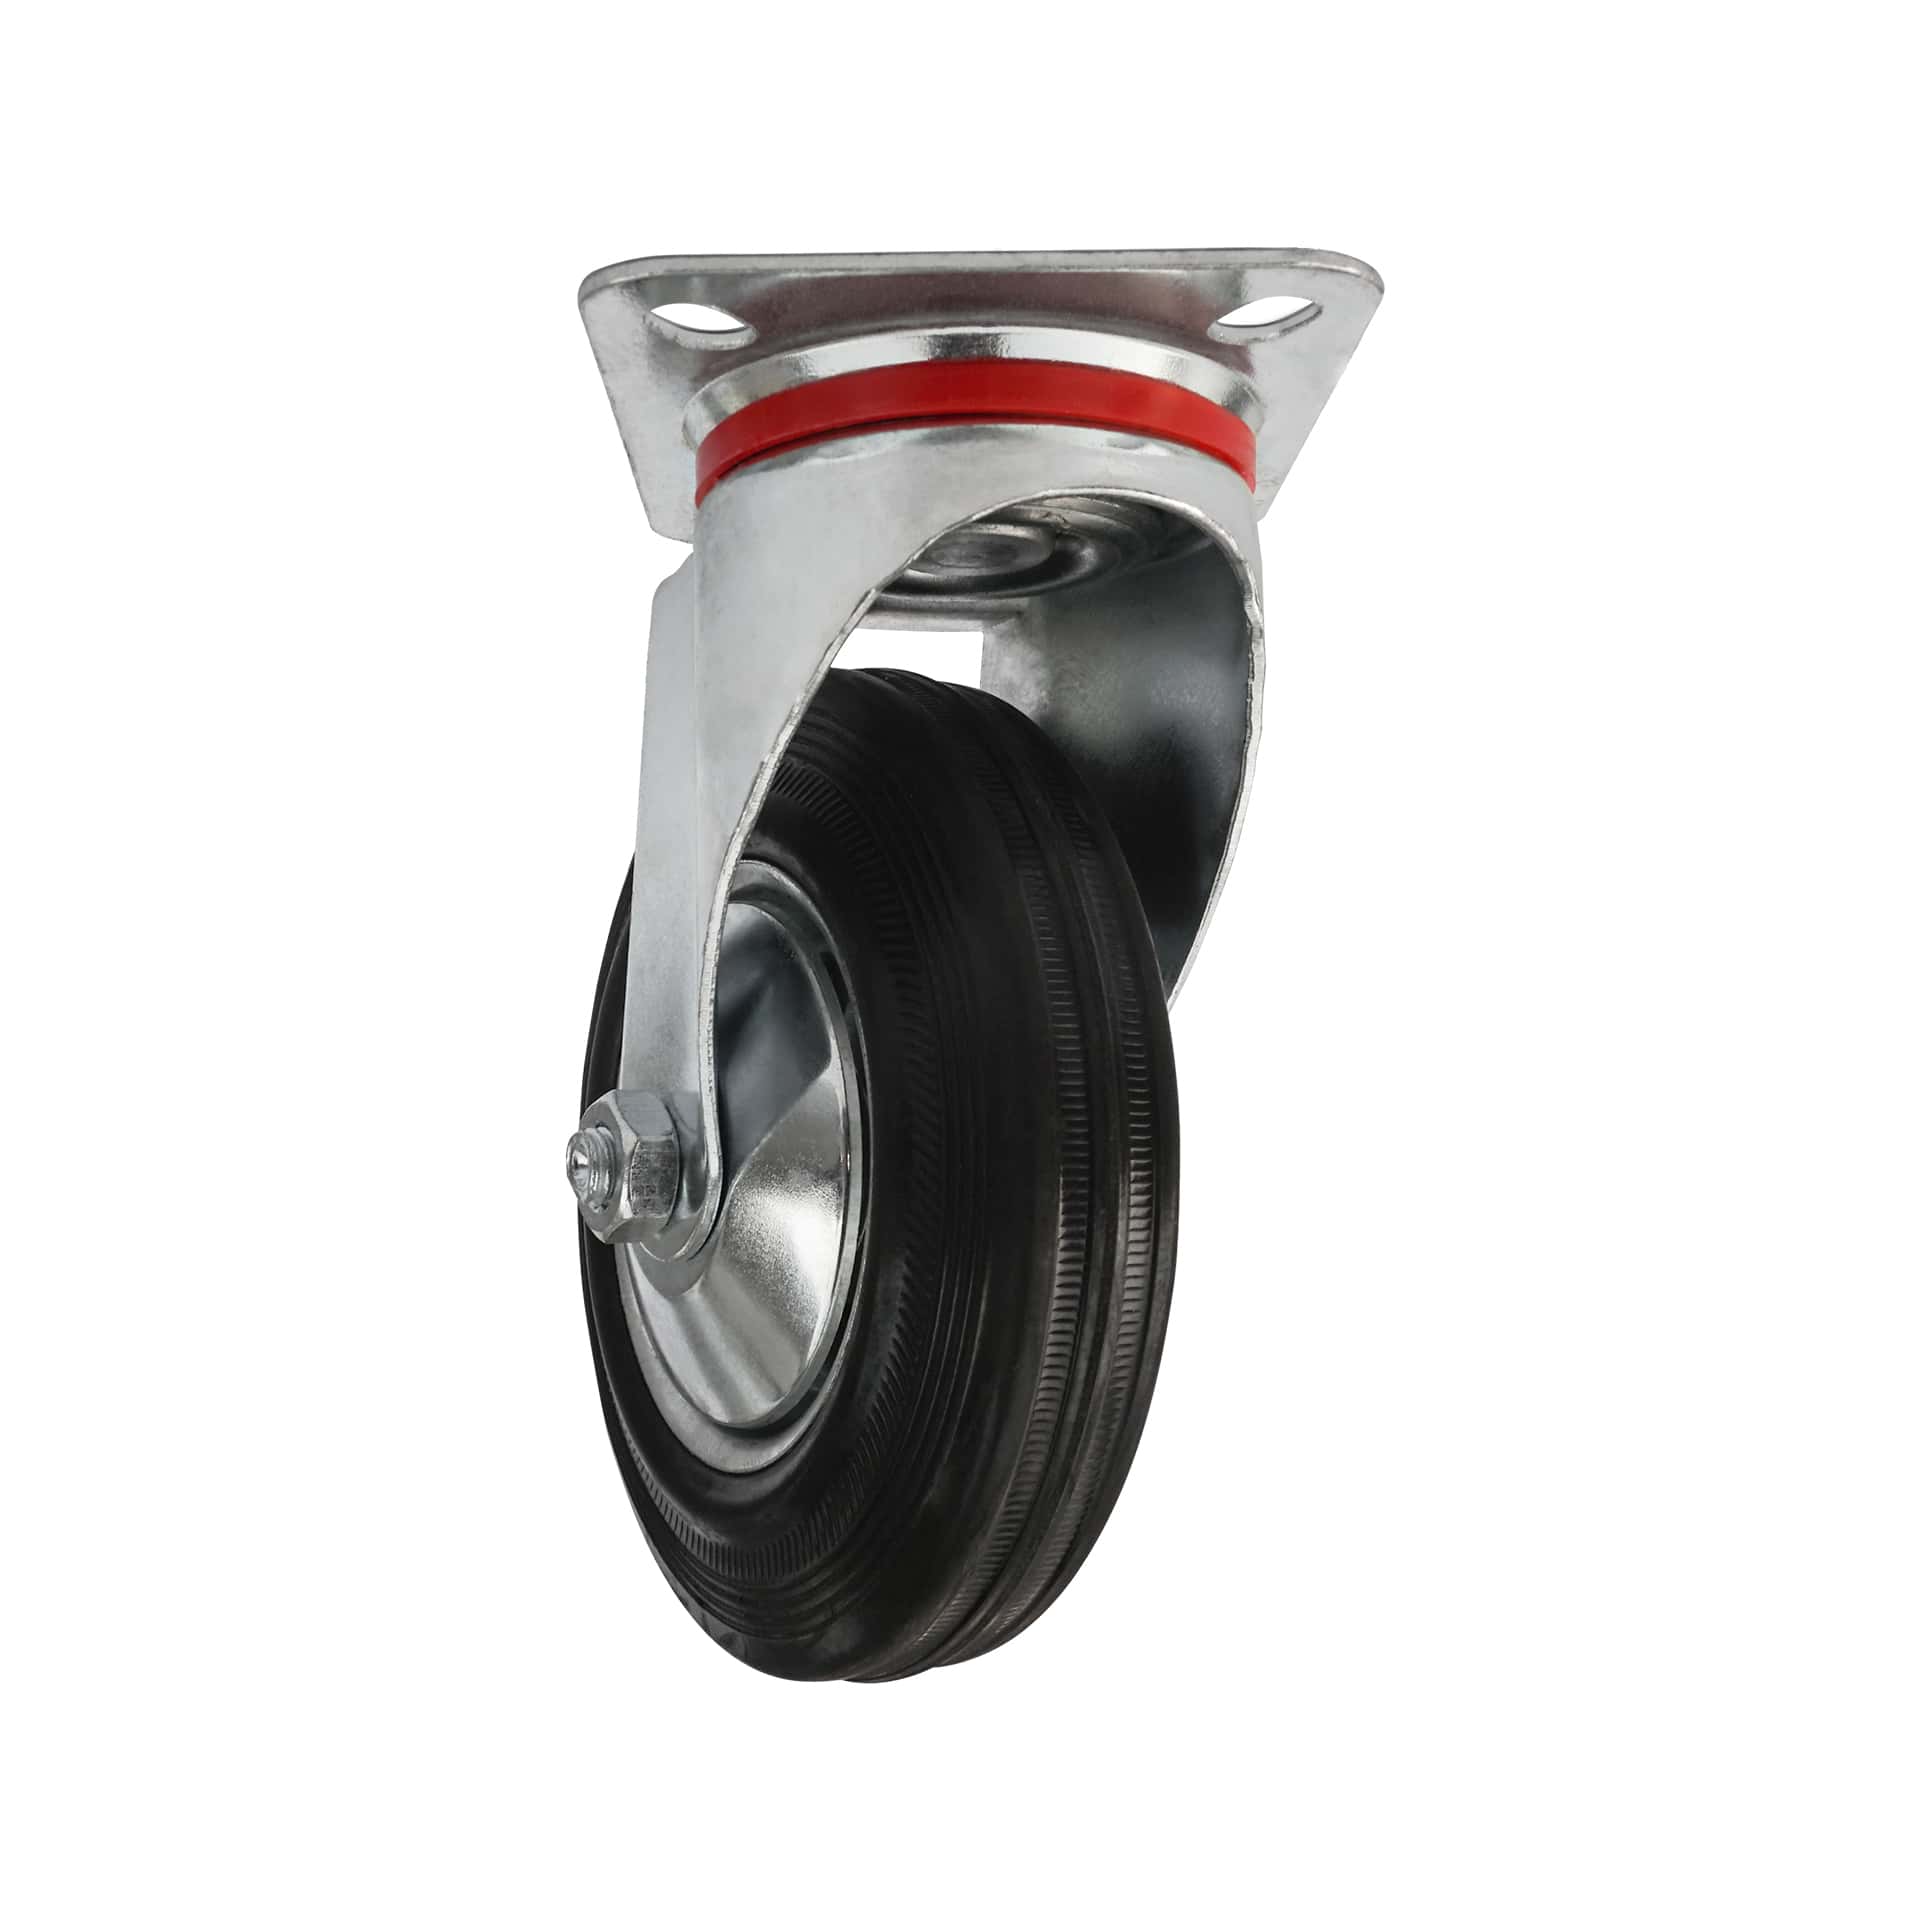 Ø 100 mm | Zestaw kołowy obrotowy bez hamulca: metal guma, płyta mocująca, łożysko wałeczkowe, nośność 50 kg | 4001-100 - półprofil